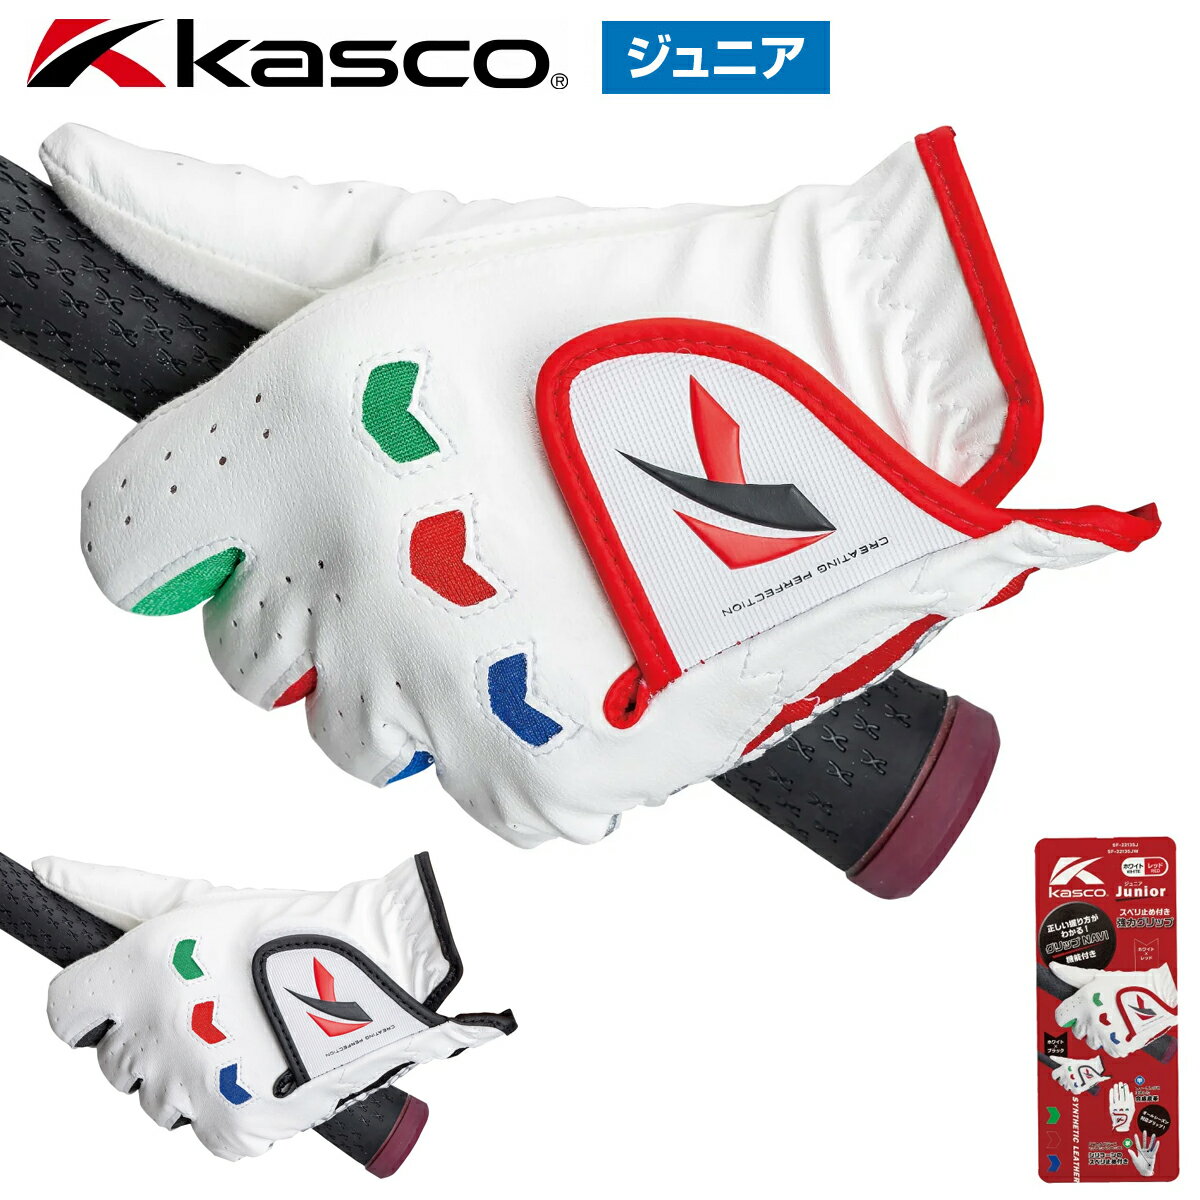 Kasco キャスコ 正規品 ジュニア ゴルフグローブ 左手用 子供用 SF-22135J 【あす楽対応】